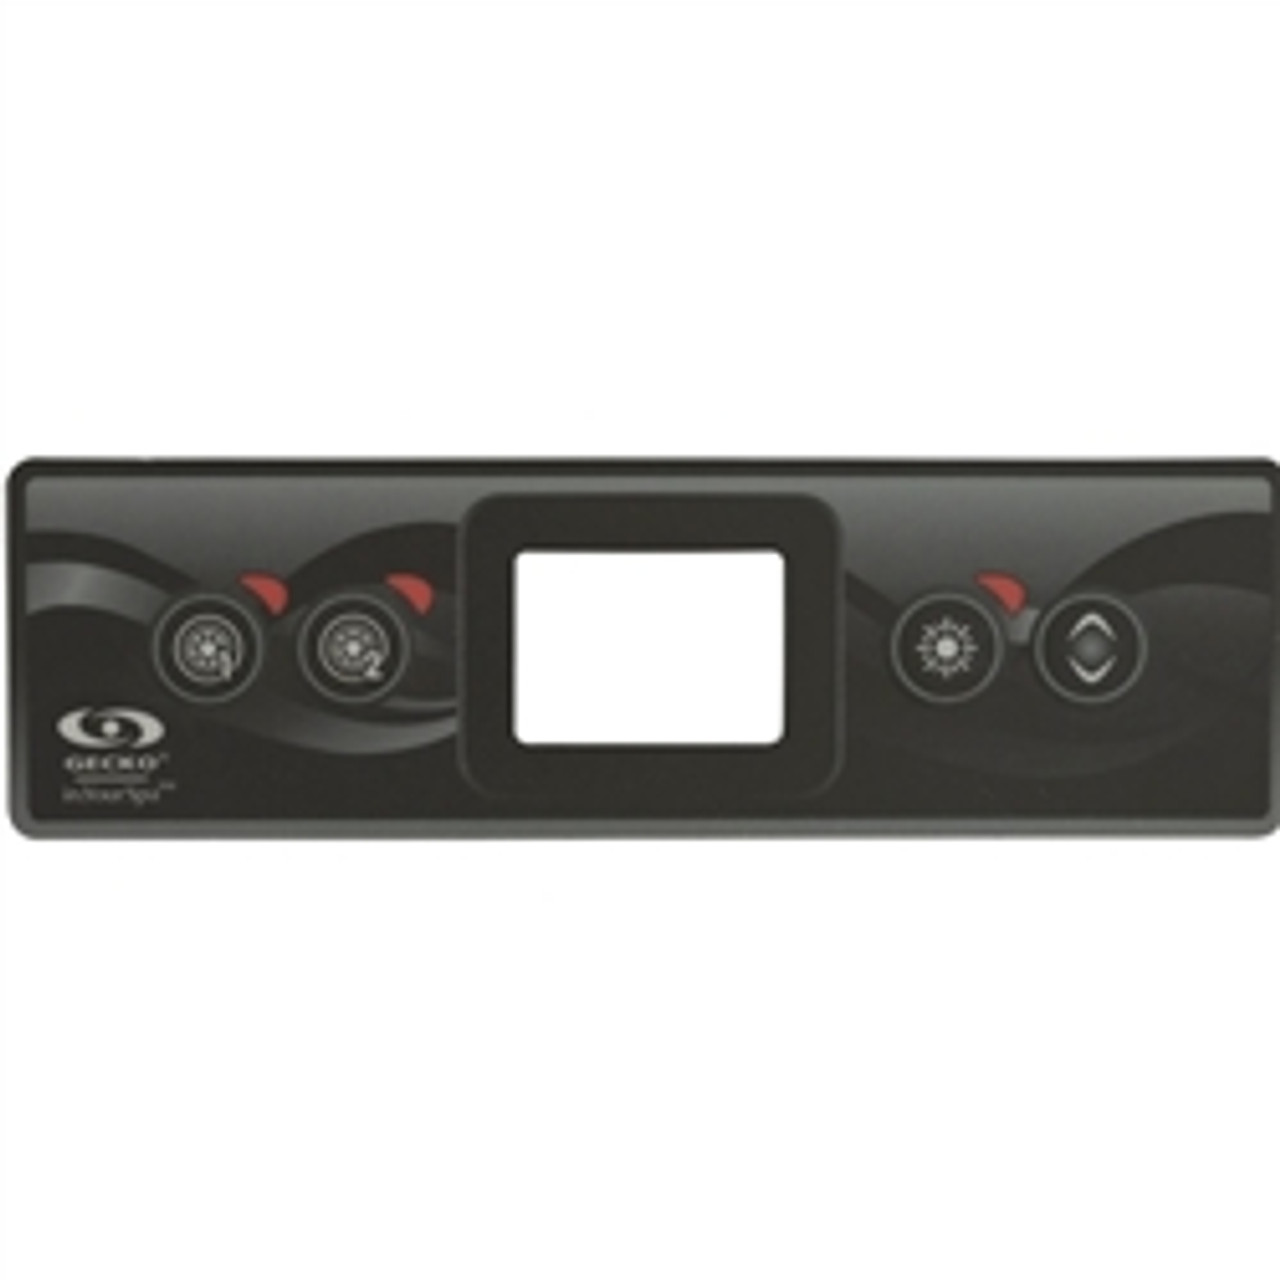 Gecko K300 4 Button Overlay Sticker, Dual Pump, 9916-101500